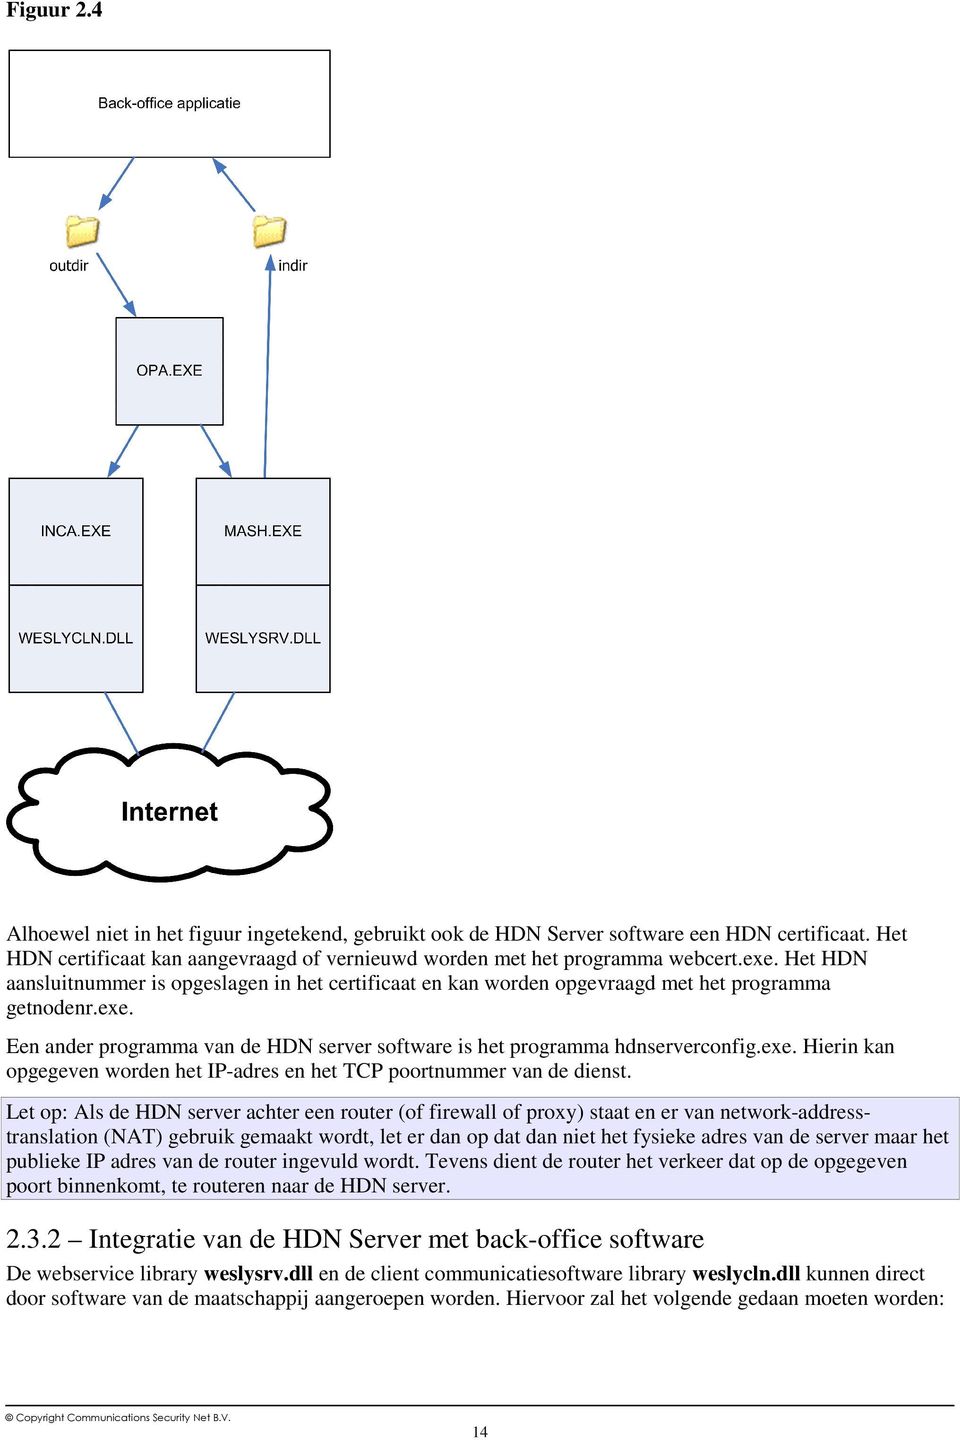 Let op: Als de HDN server achter een router (of firewall of proxy) staat en er van network-addresstranslation (NAT) gebruik gemaakt wordt, let er dan op dat dan niet het fysieke adres van de server